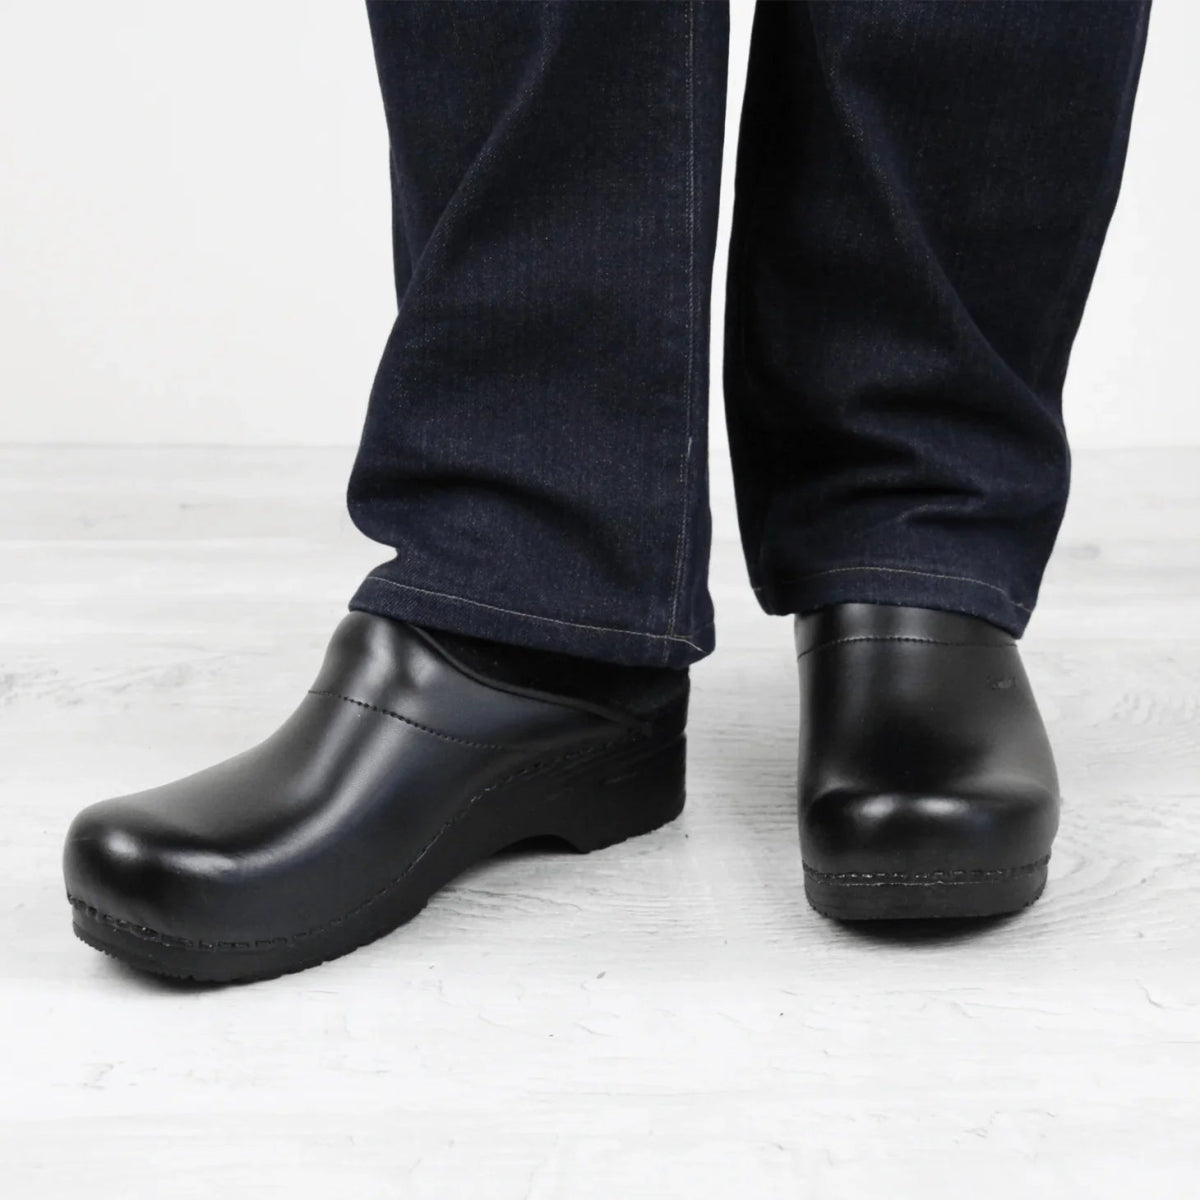 SANITA KARL PU MEN PROFESSIONAL CLOG IN BLACK - TLW Shoes